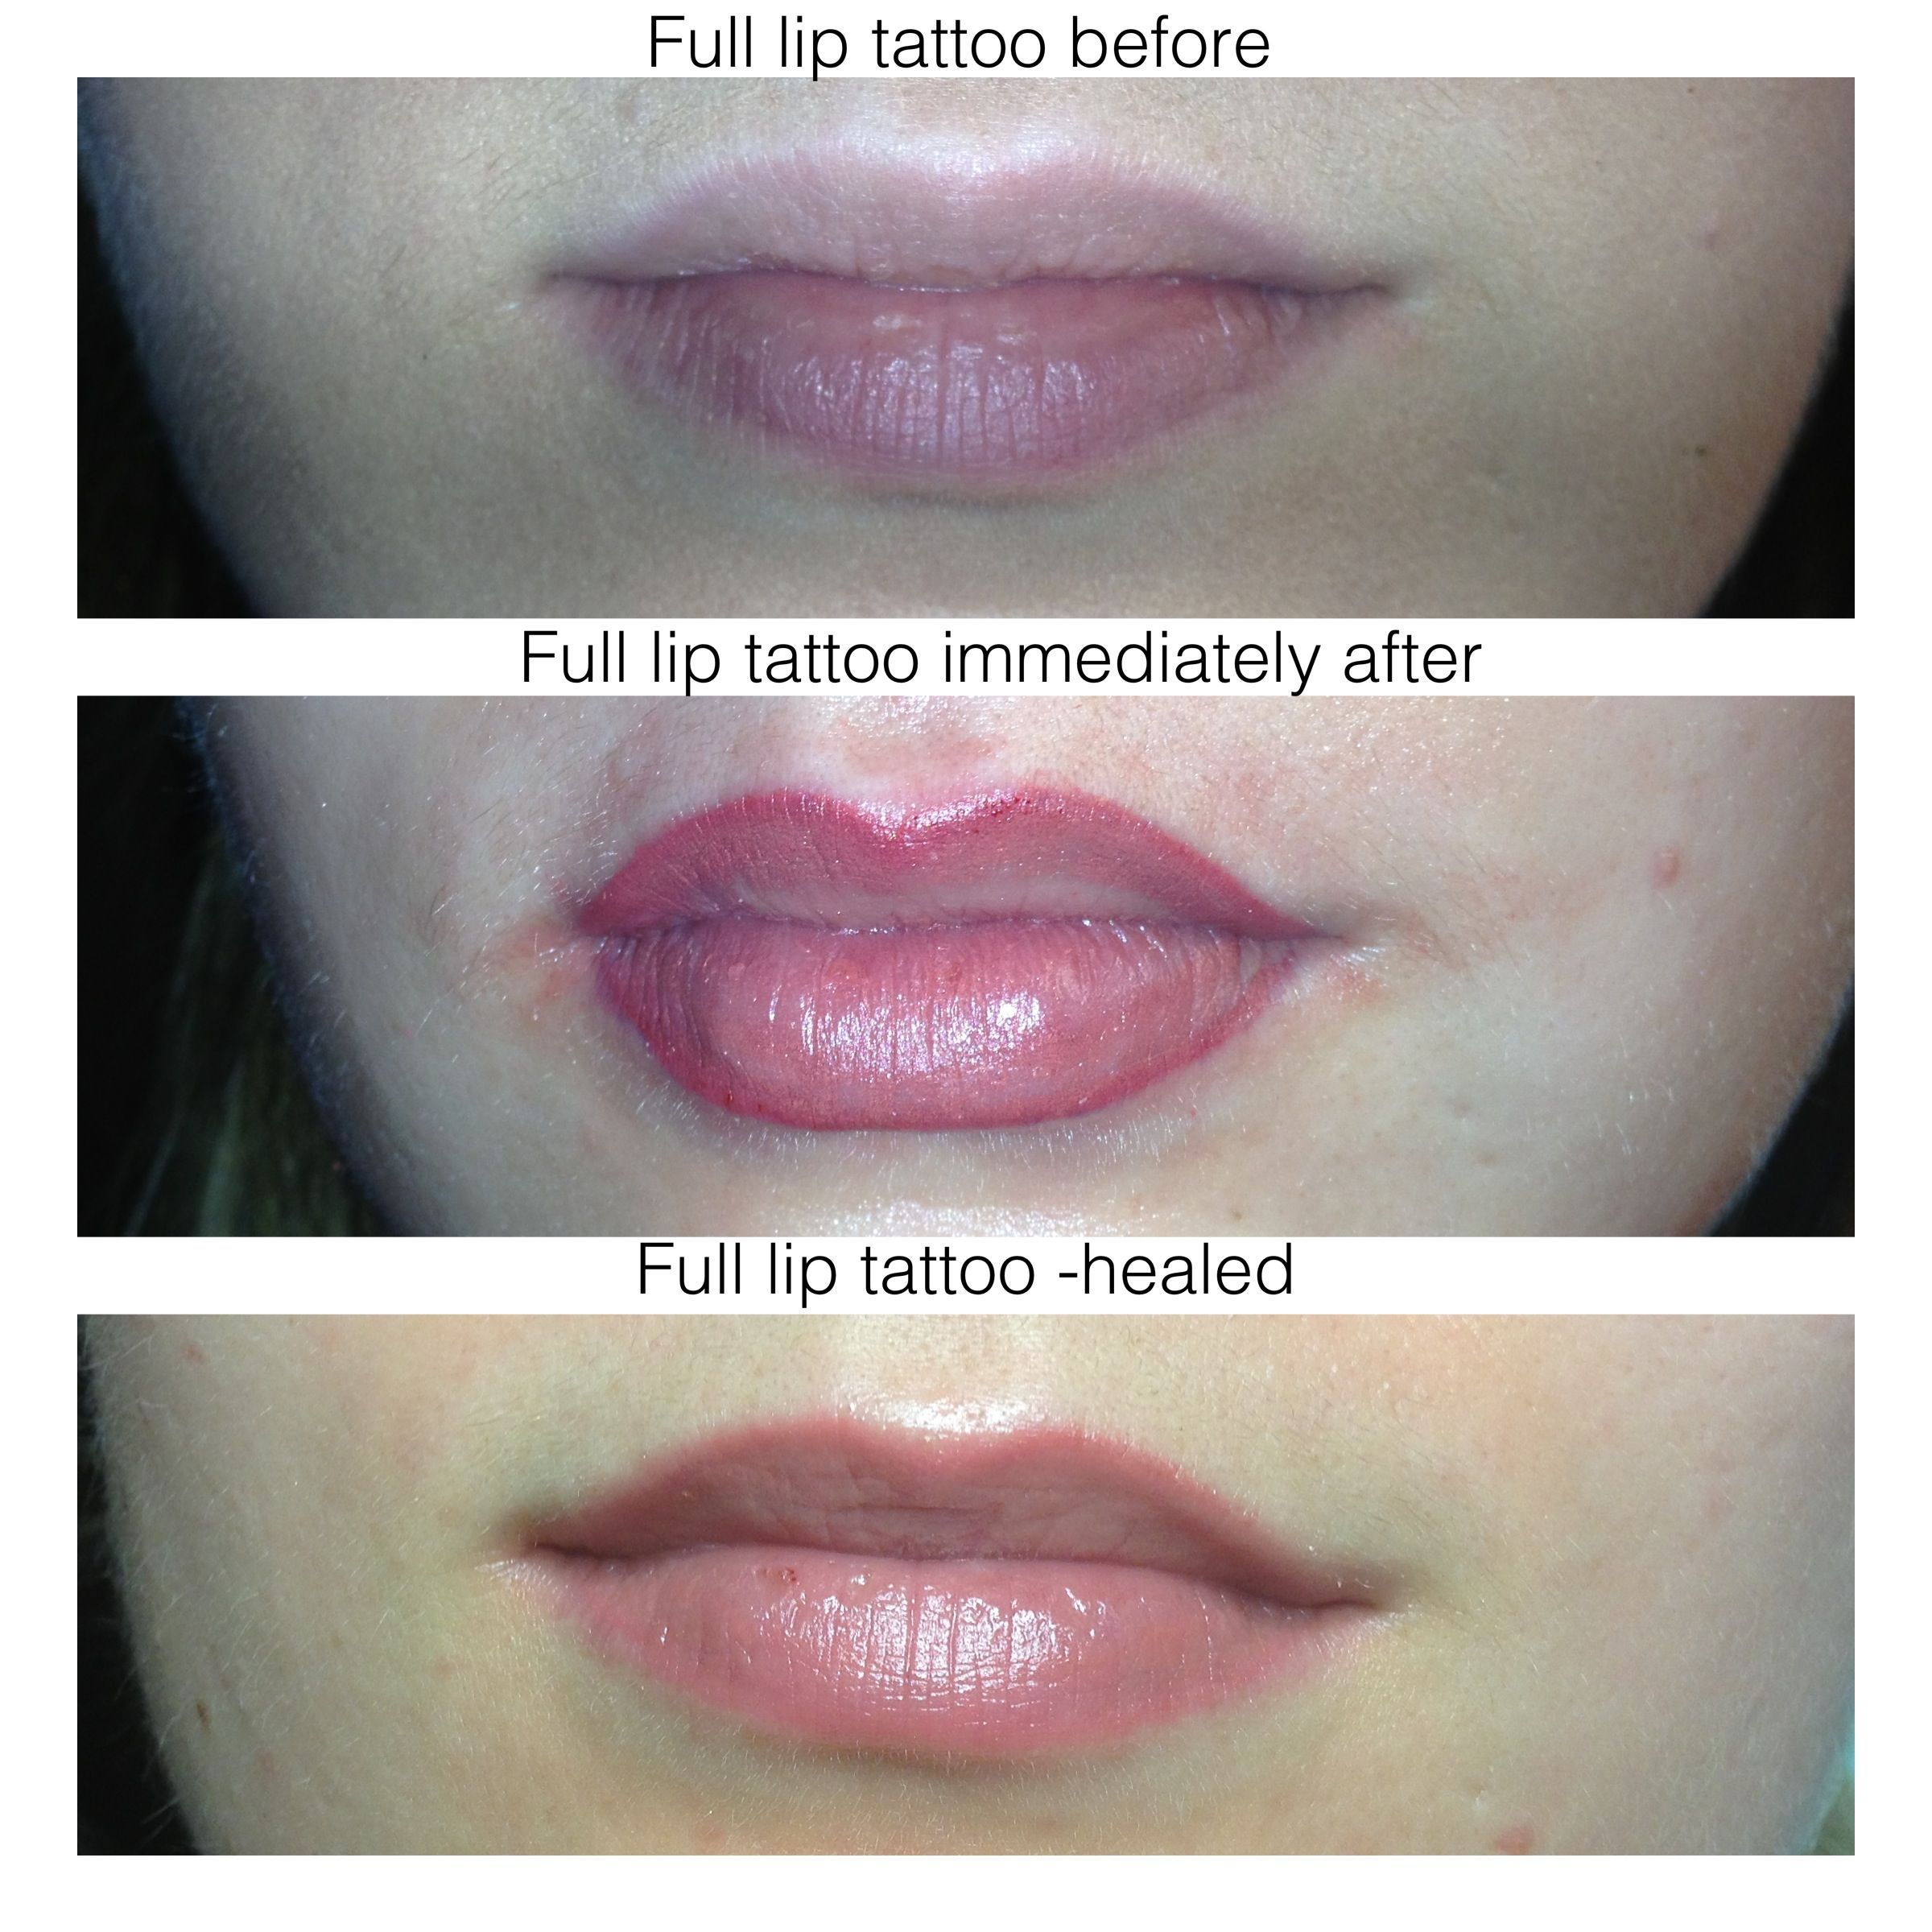 Перманентный макияж губ: до и после